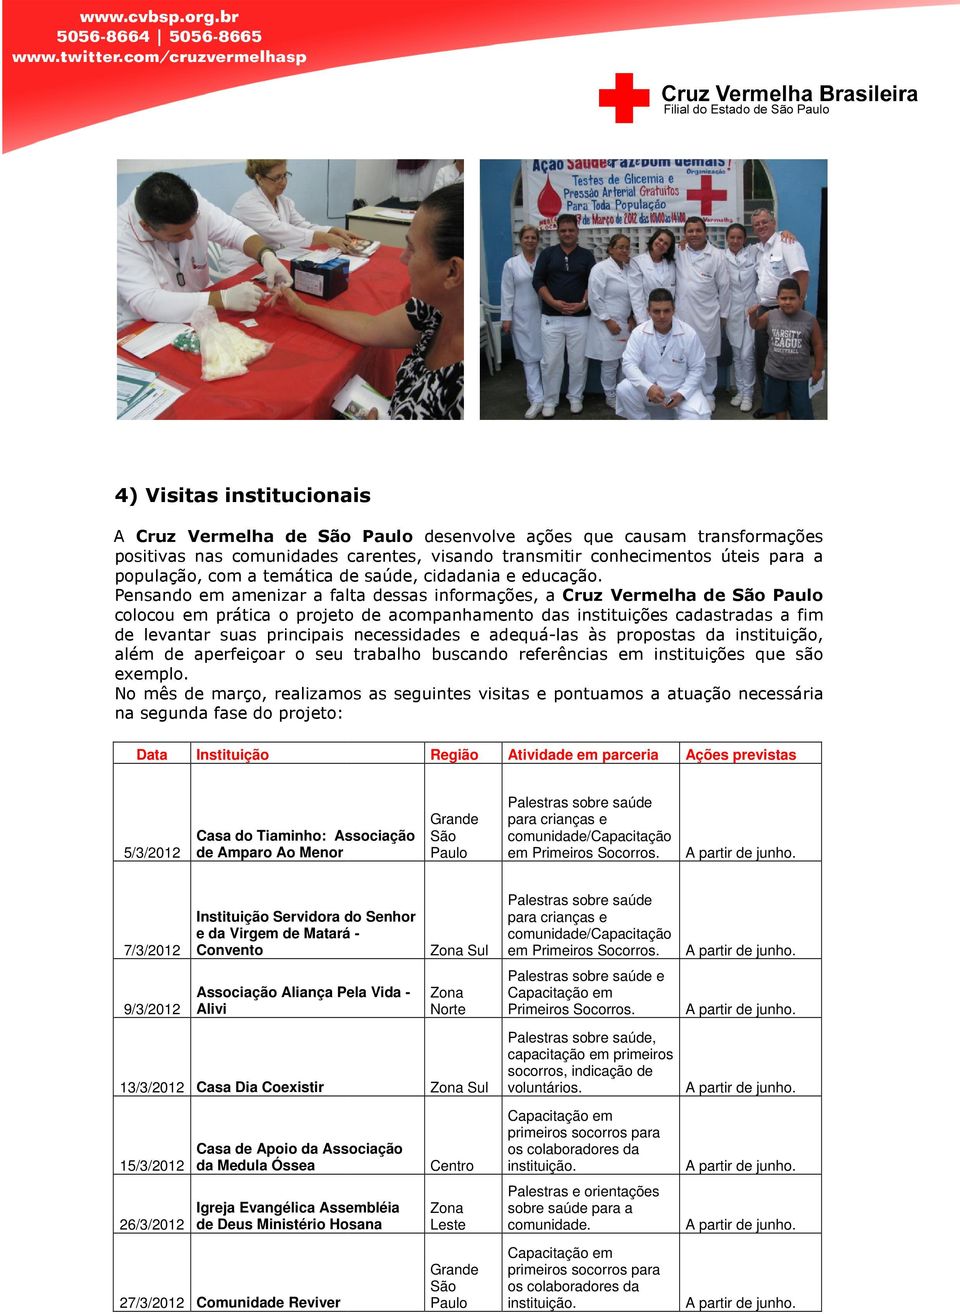 Pensando em amenizar a falta dessas informações, a Cruz Vermelha de São Paulo colocou em prática o projeto de acompanhamento das instituições cadastradas a fim de levantar suas principais pais